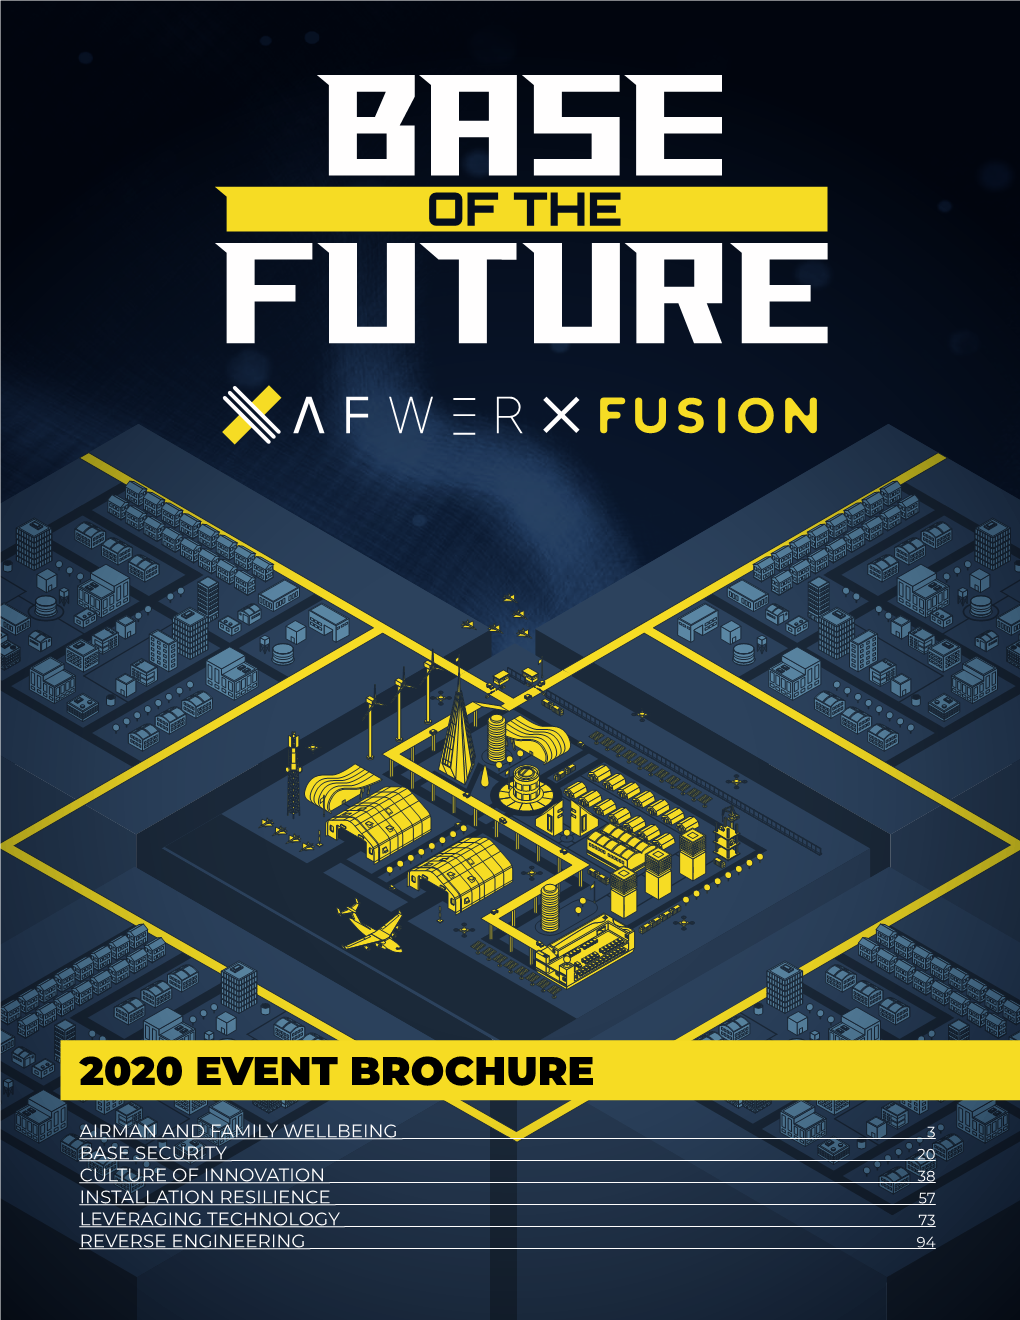 2020 Event Brochure